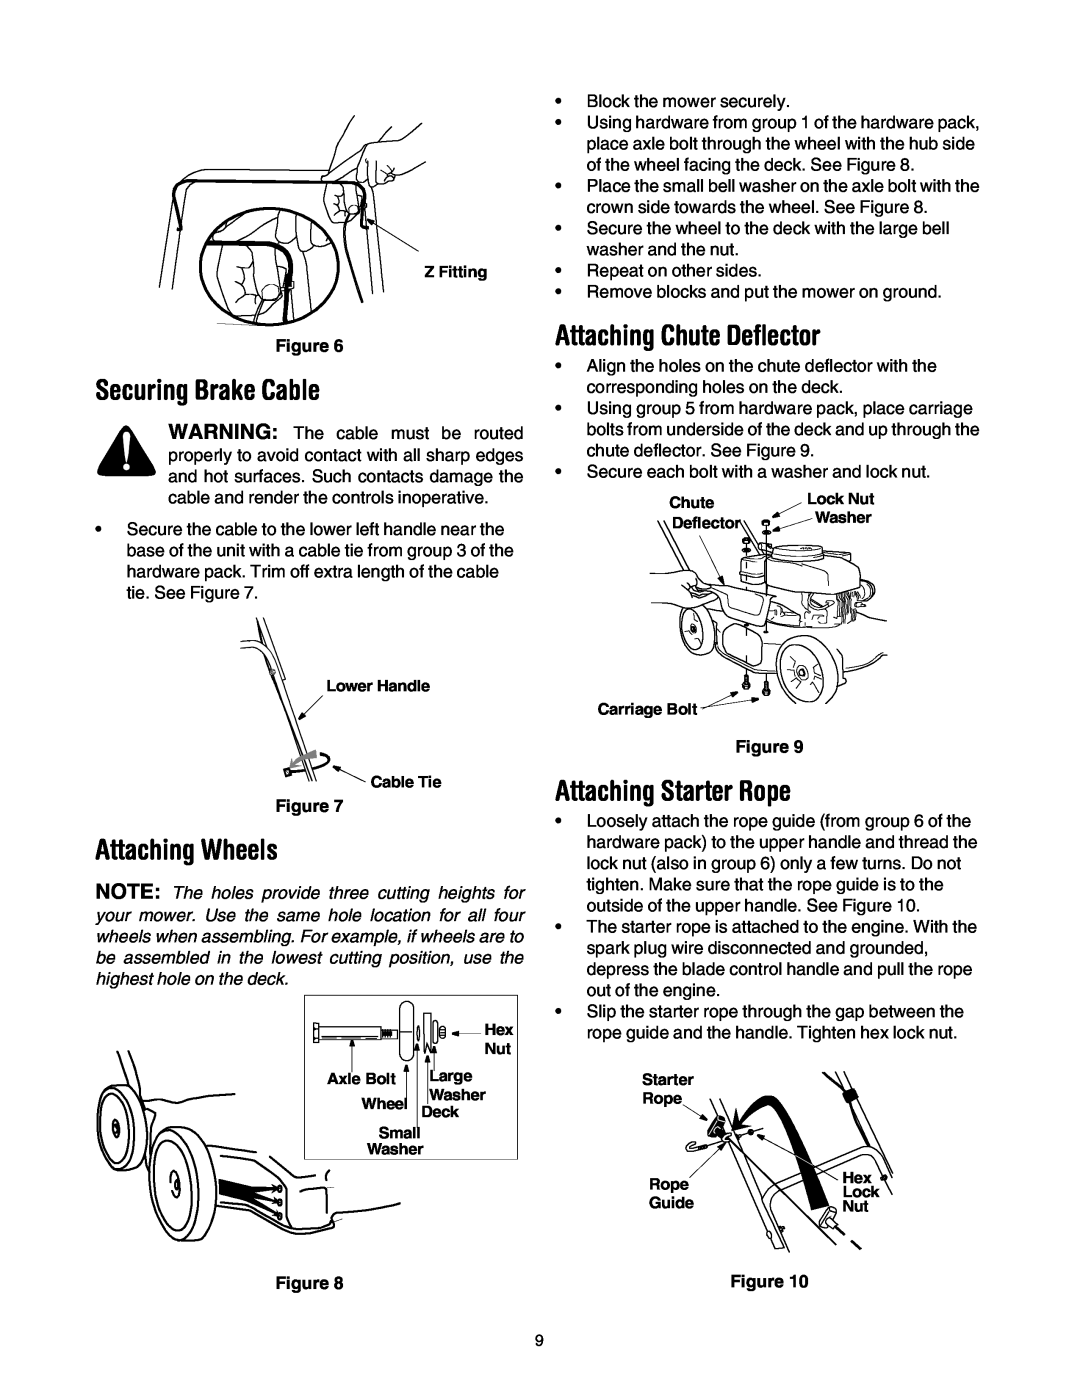 Yard Machines 20 manual Securing Brake Cable, Attaching Wheels, Attaching Chute Deflector, Attaching Starter Rope 